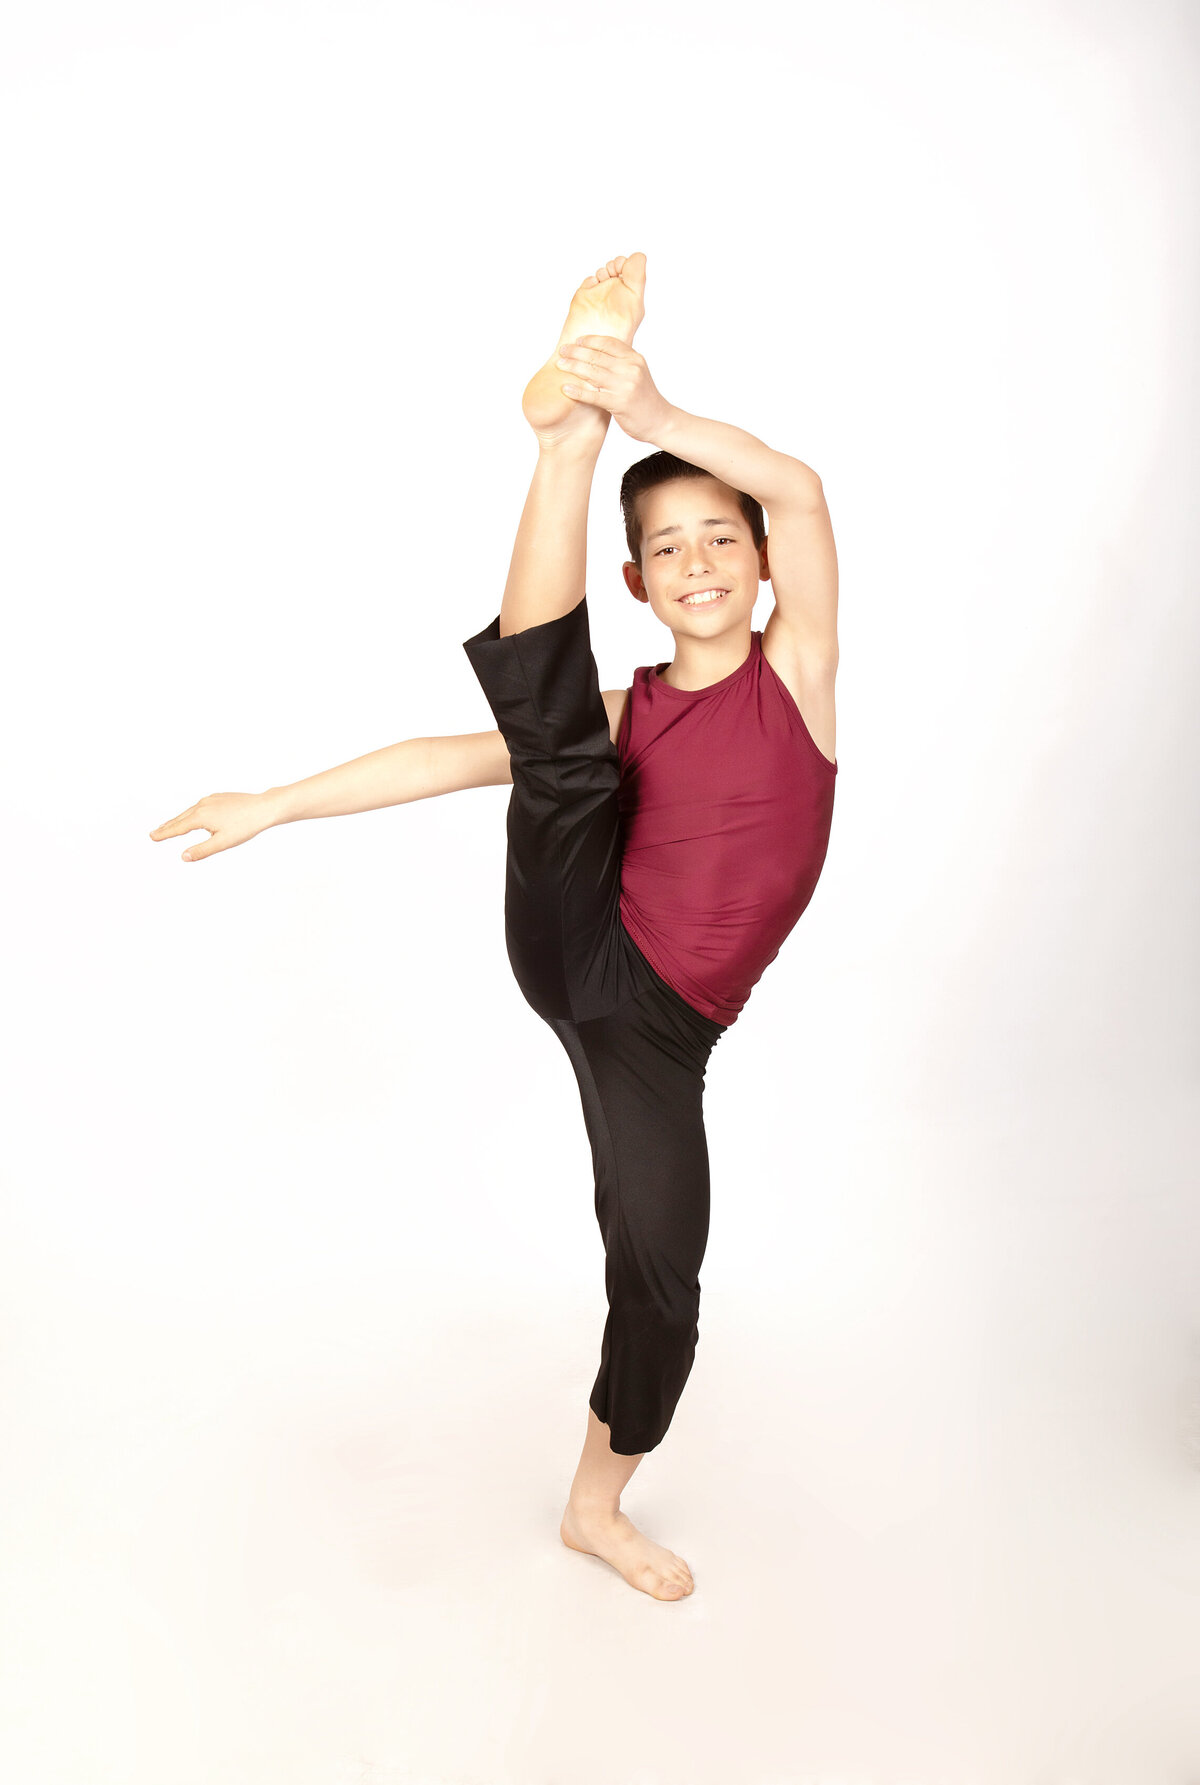 Jacob Zukoski - dance pose - jr mr